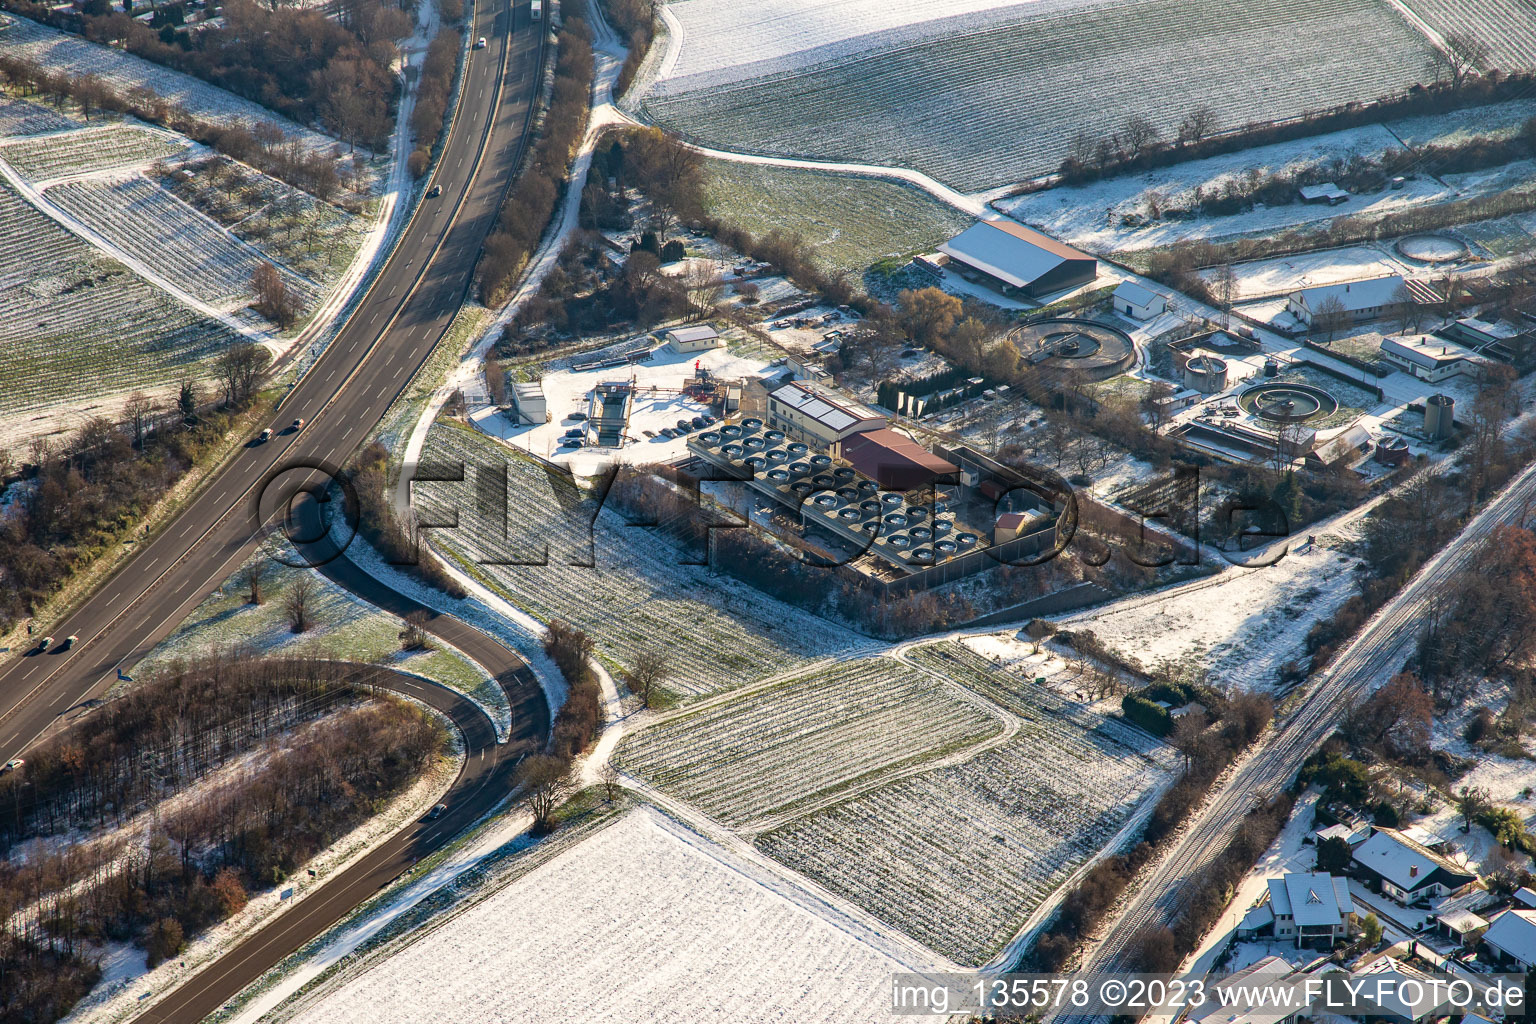 Gehothermiekraftwerk Vulcan im Winter bei Schnee in Insheim im Bundesland Rheinland-Pfalz, Deutschland